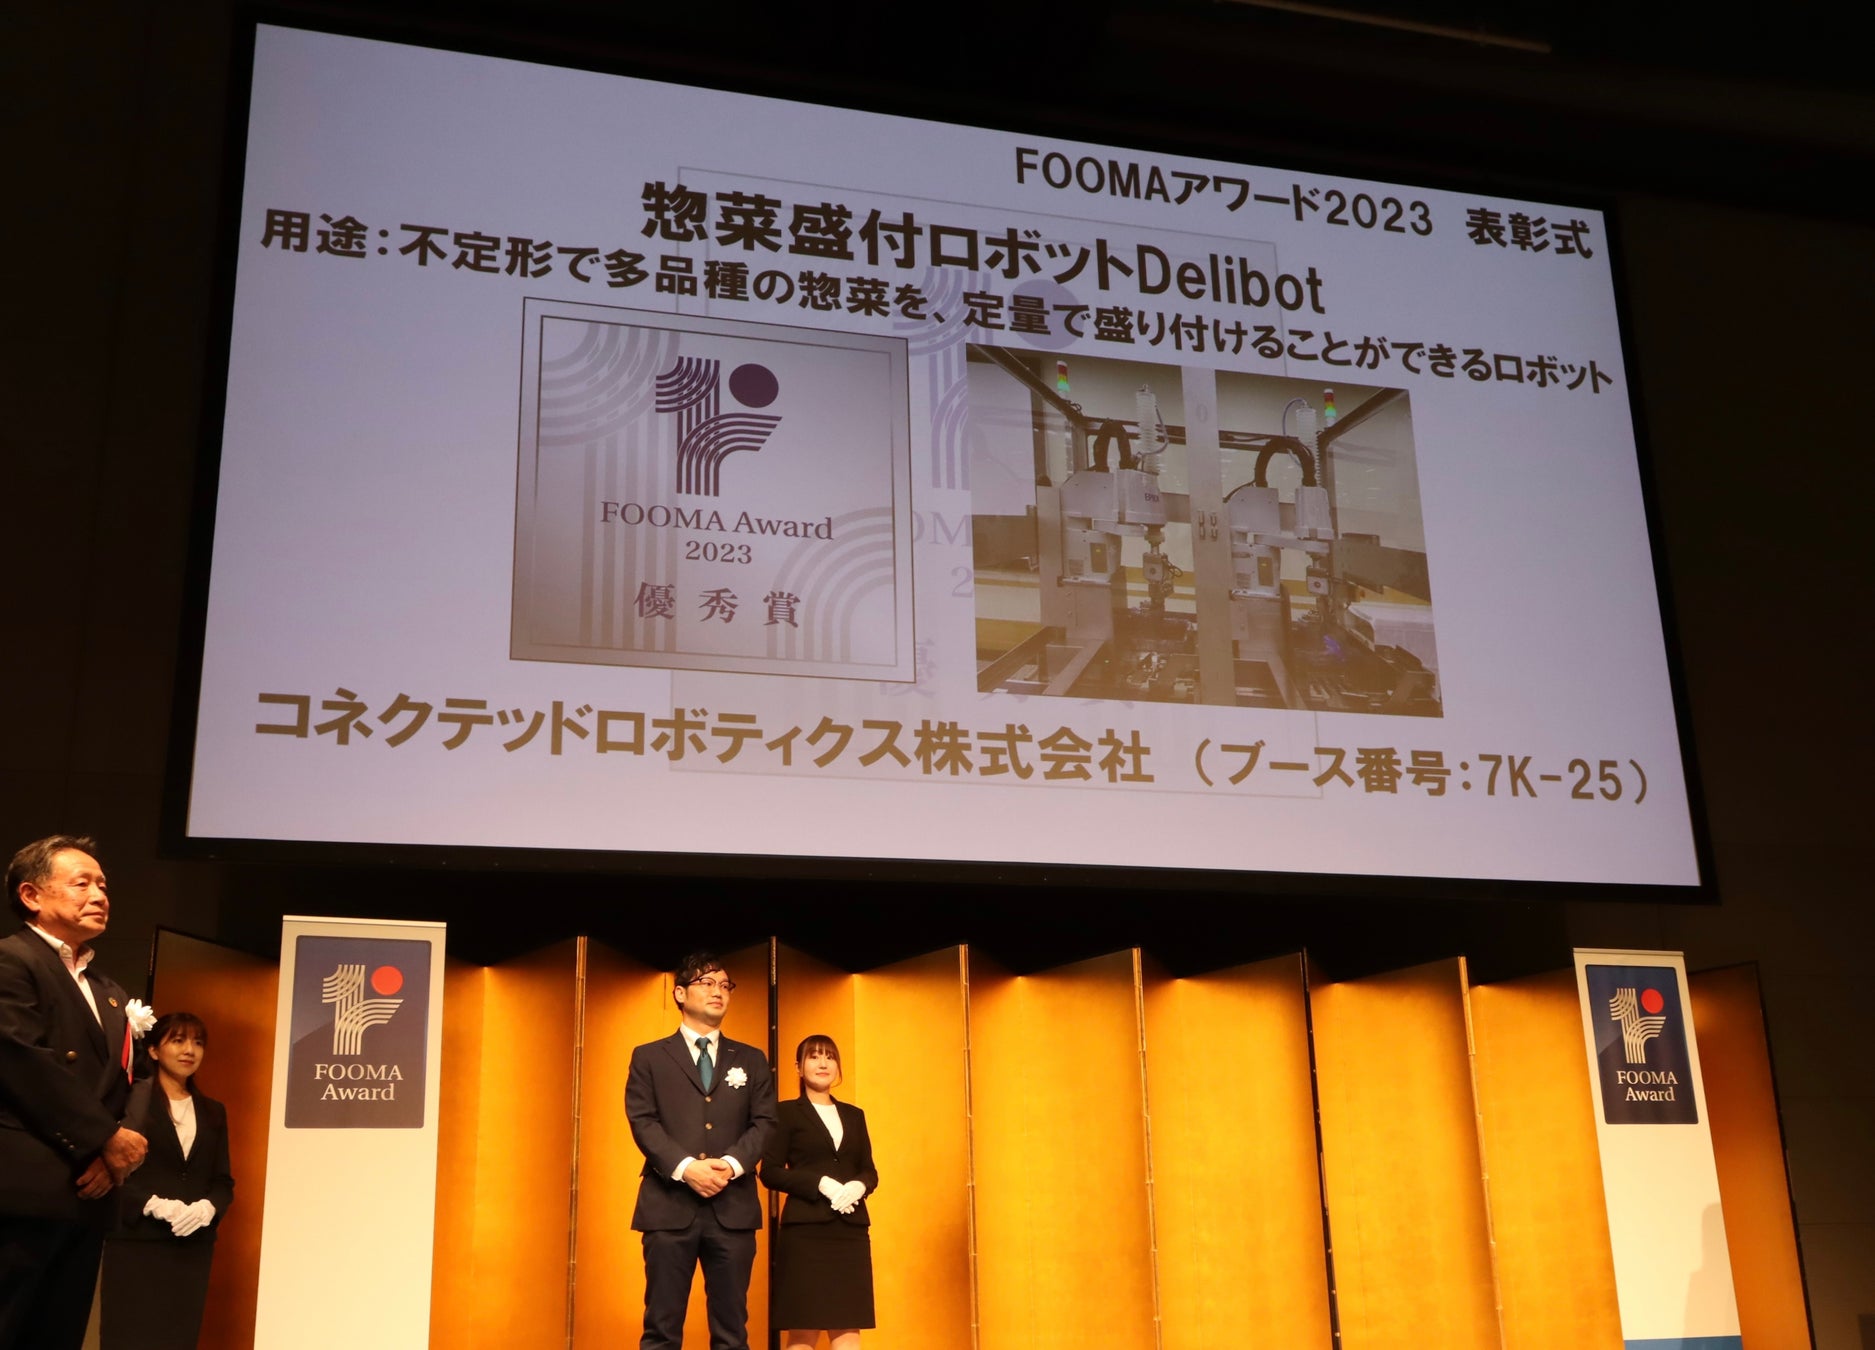 第2回FOOMAアワード2023にて、惣菜盛付ロボット「Delibot™」が優秀賞を受賞